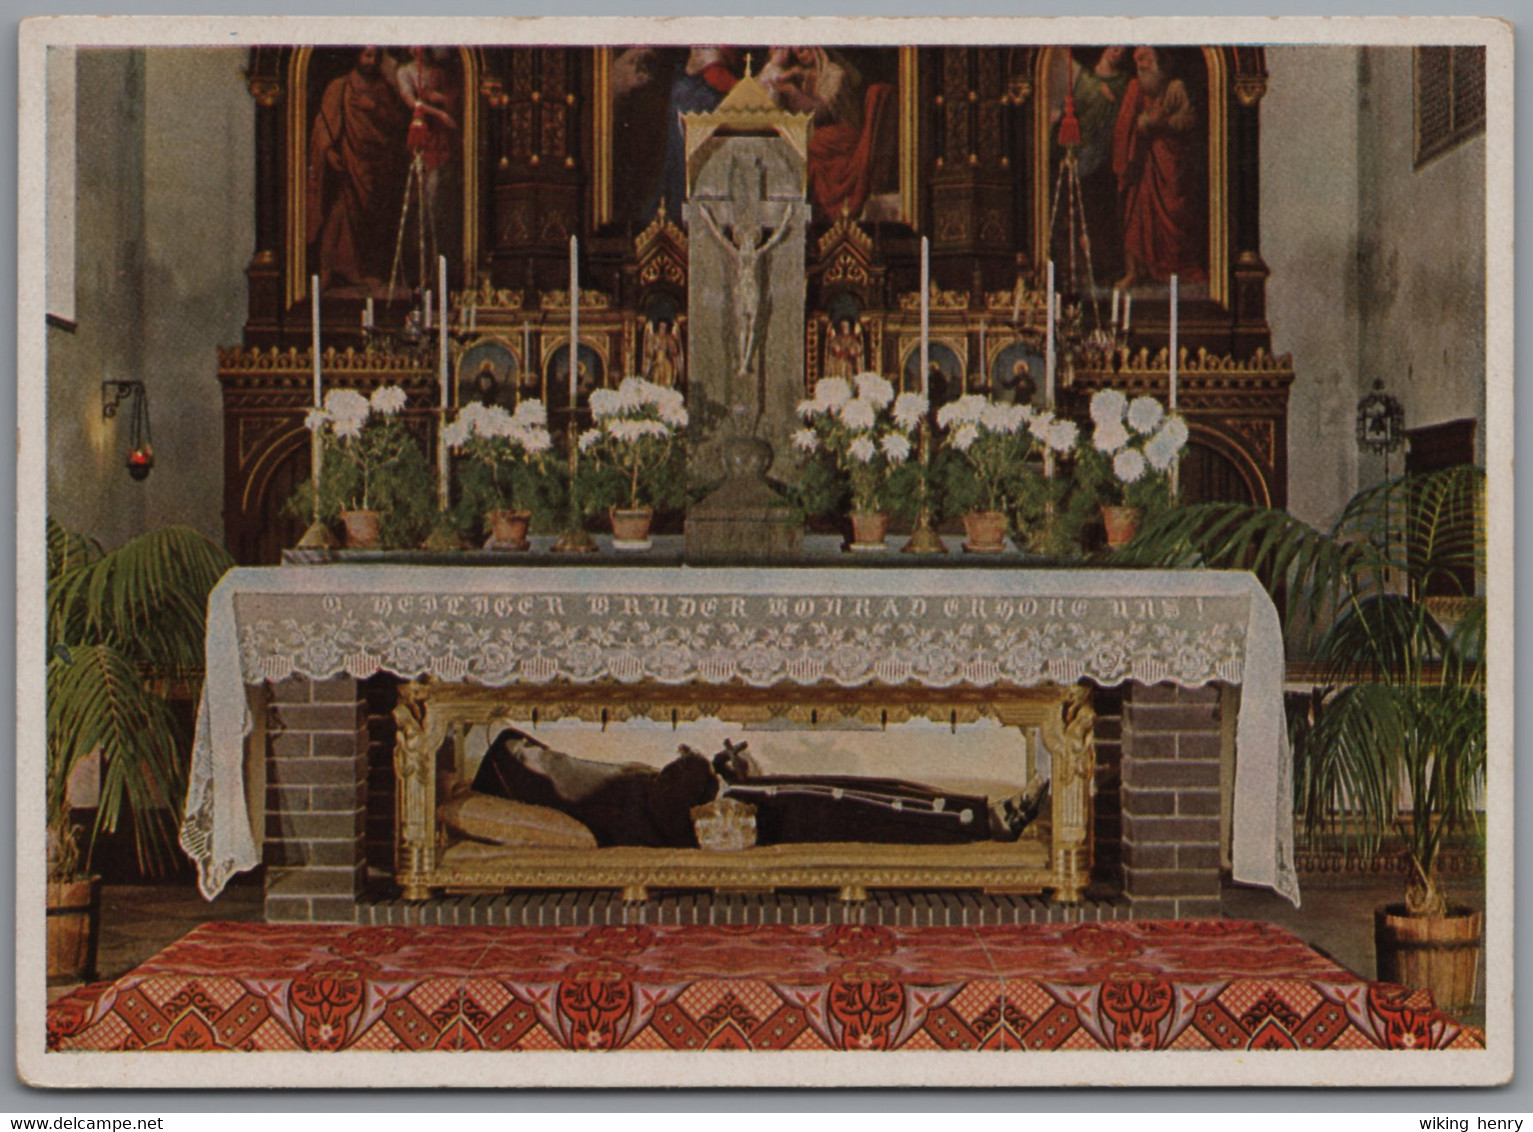 Altötting - Alte Sankt Anna Kirche 1   Altar Des Heiligen Bruders Konrad Mit Reliquienschrein - Altoetting